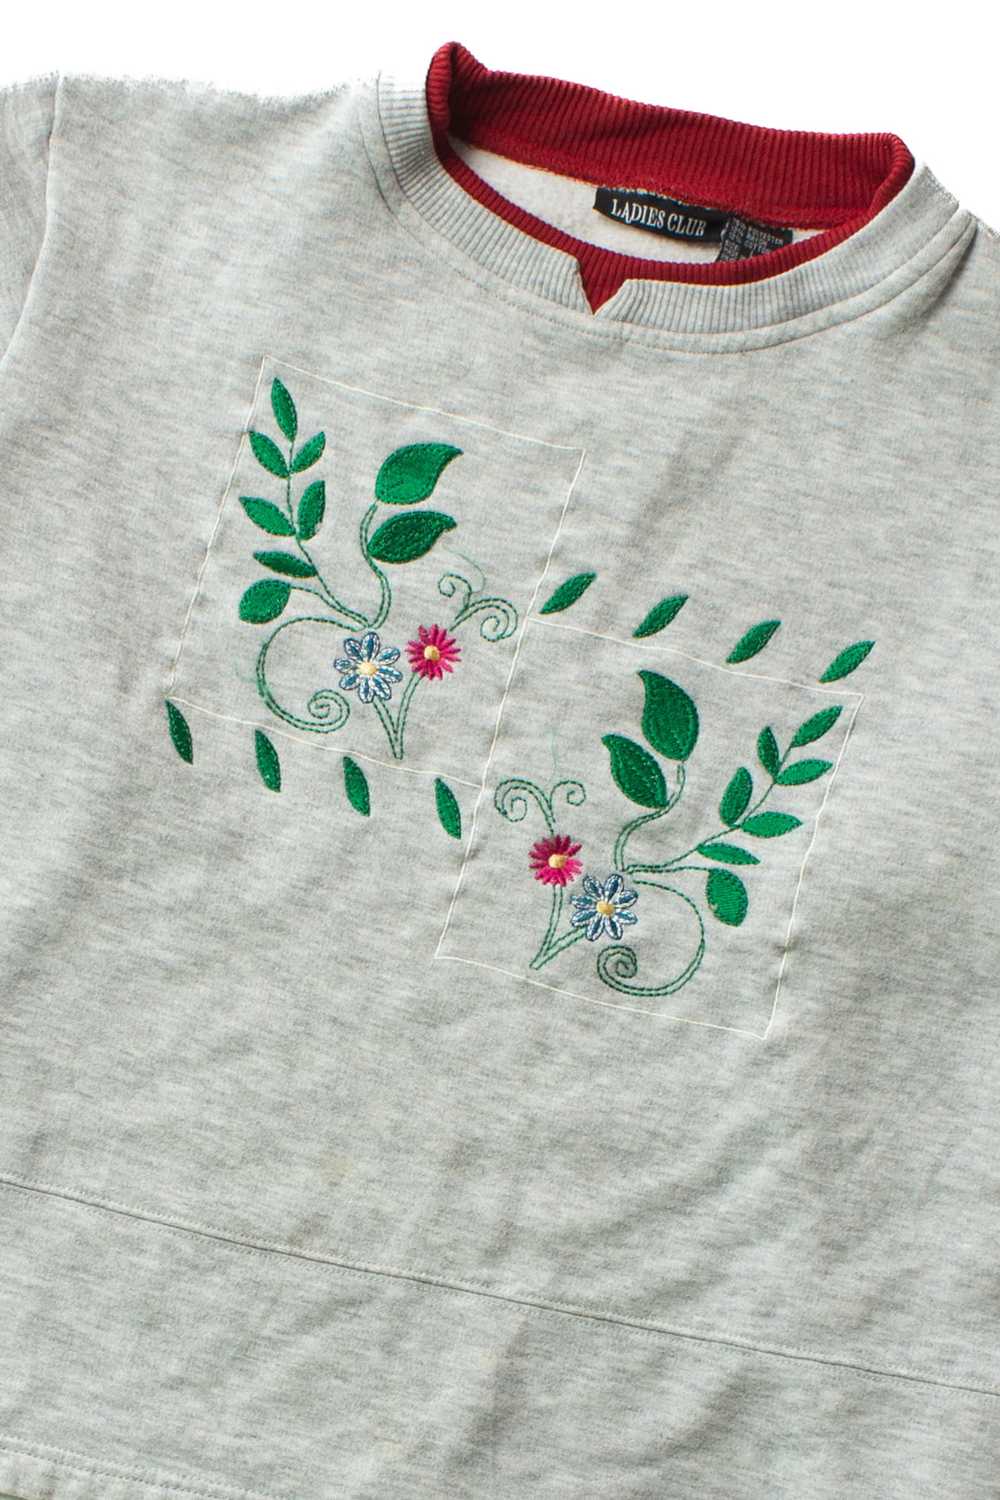 Vintage Embroidered Floral Squares Sweatshirt (19… - image 2